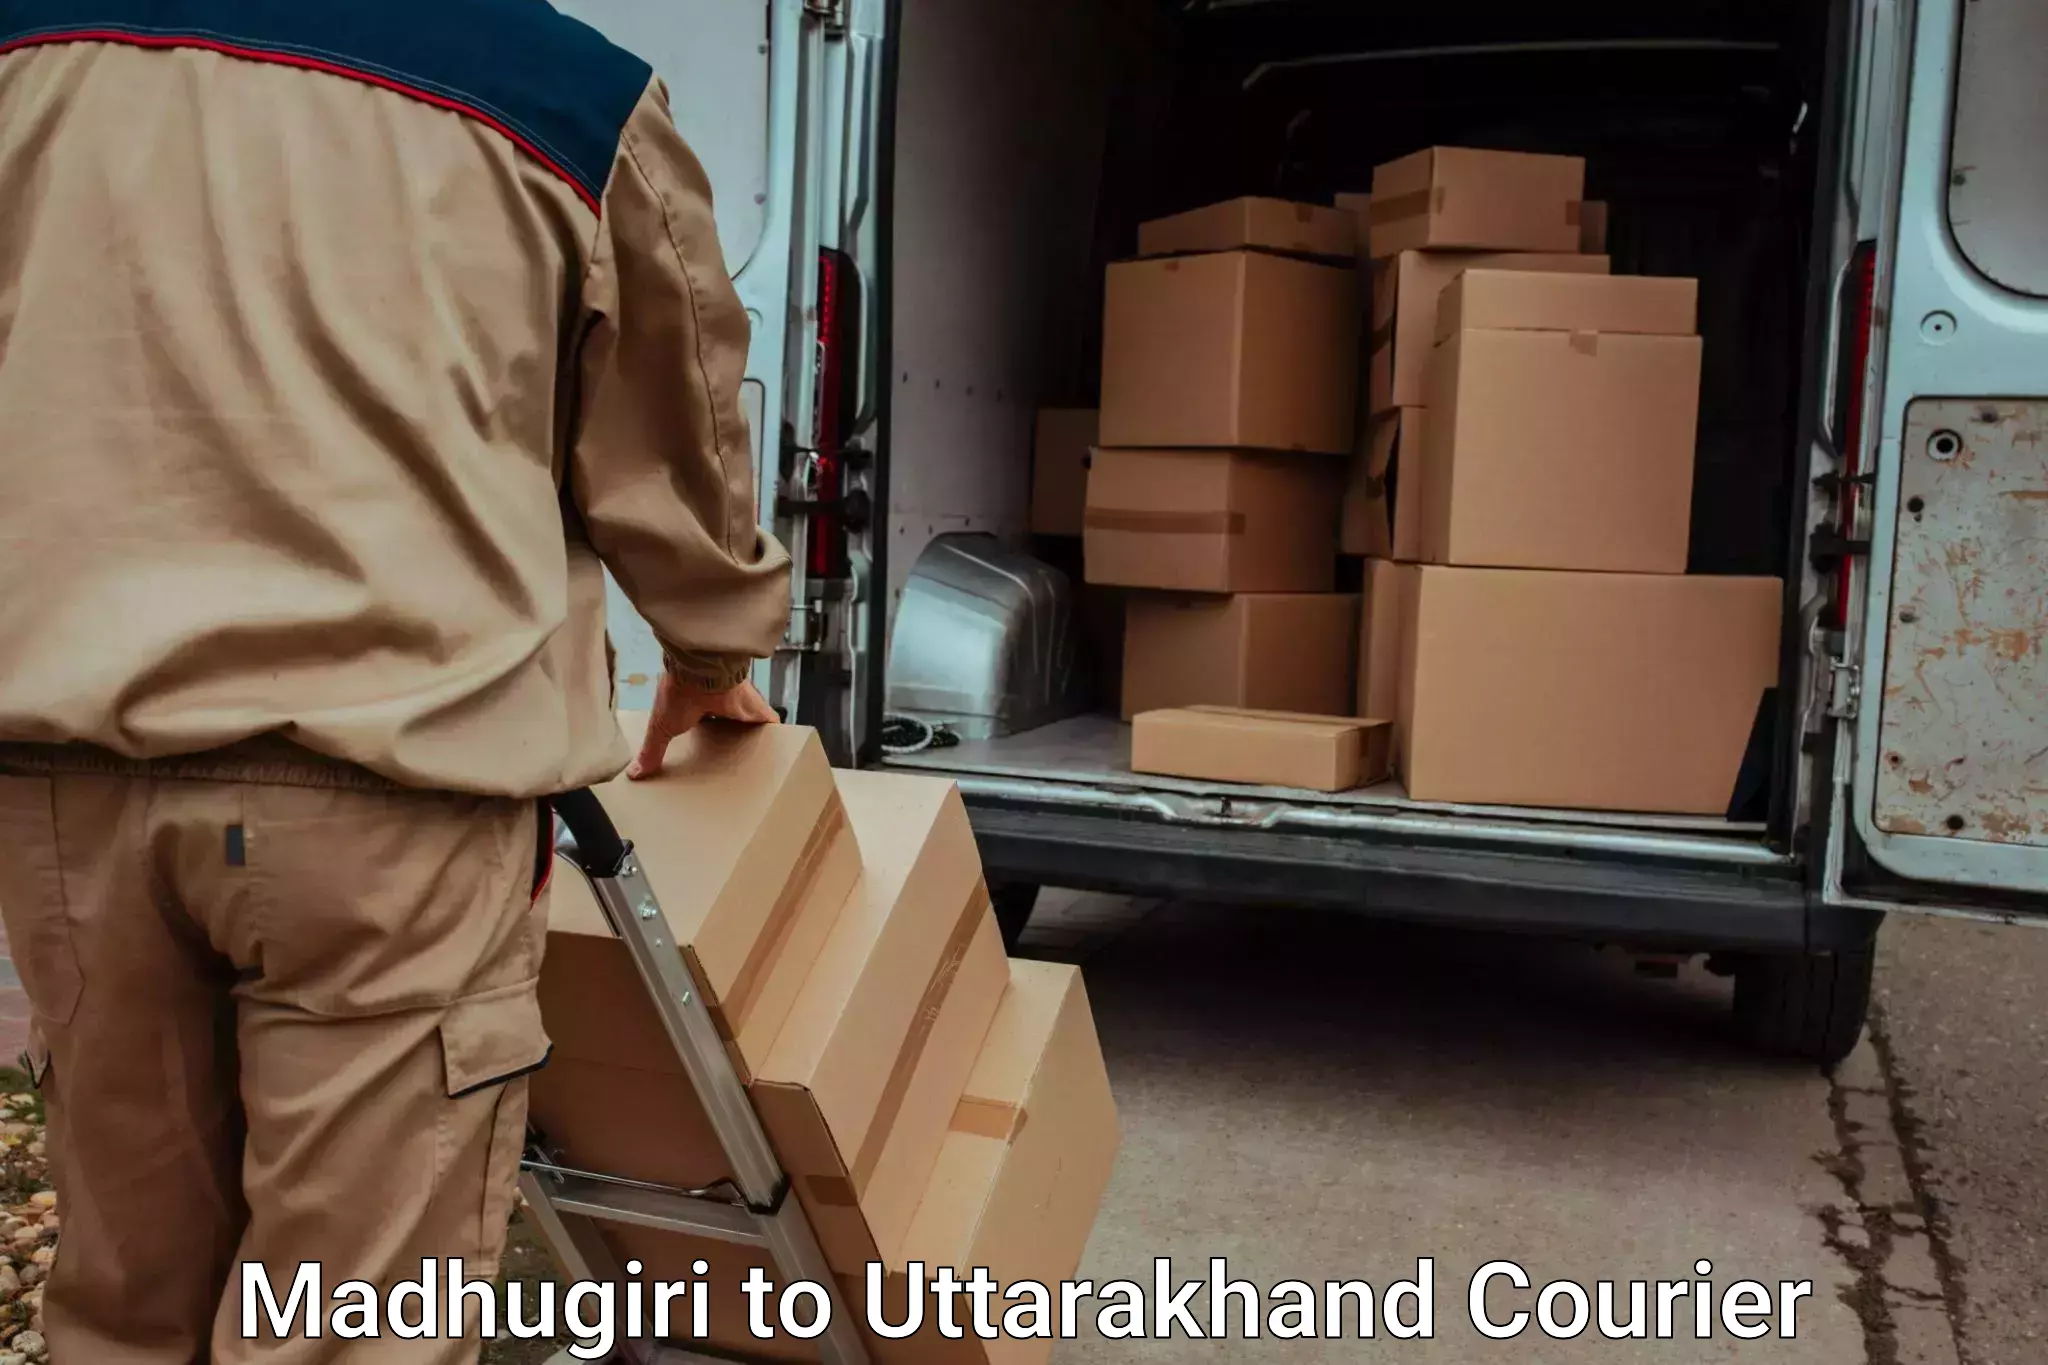 Trusted moving company Madhugiri to Uttarakhand